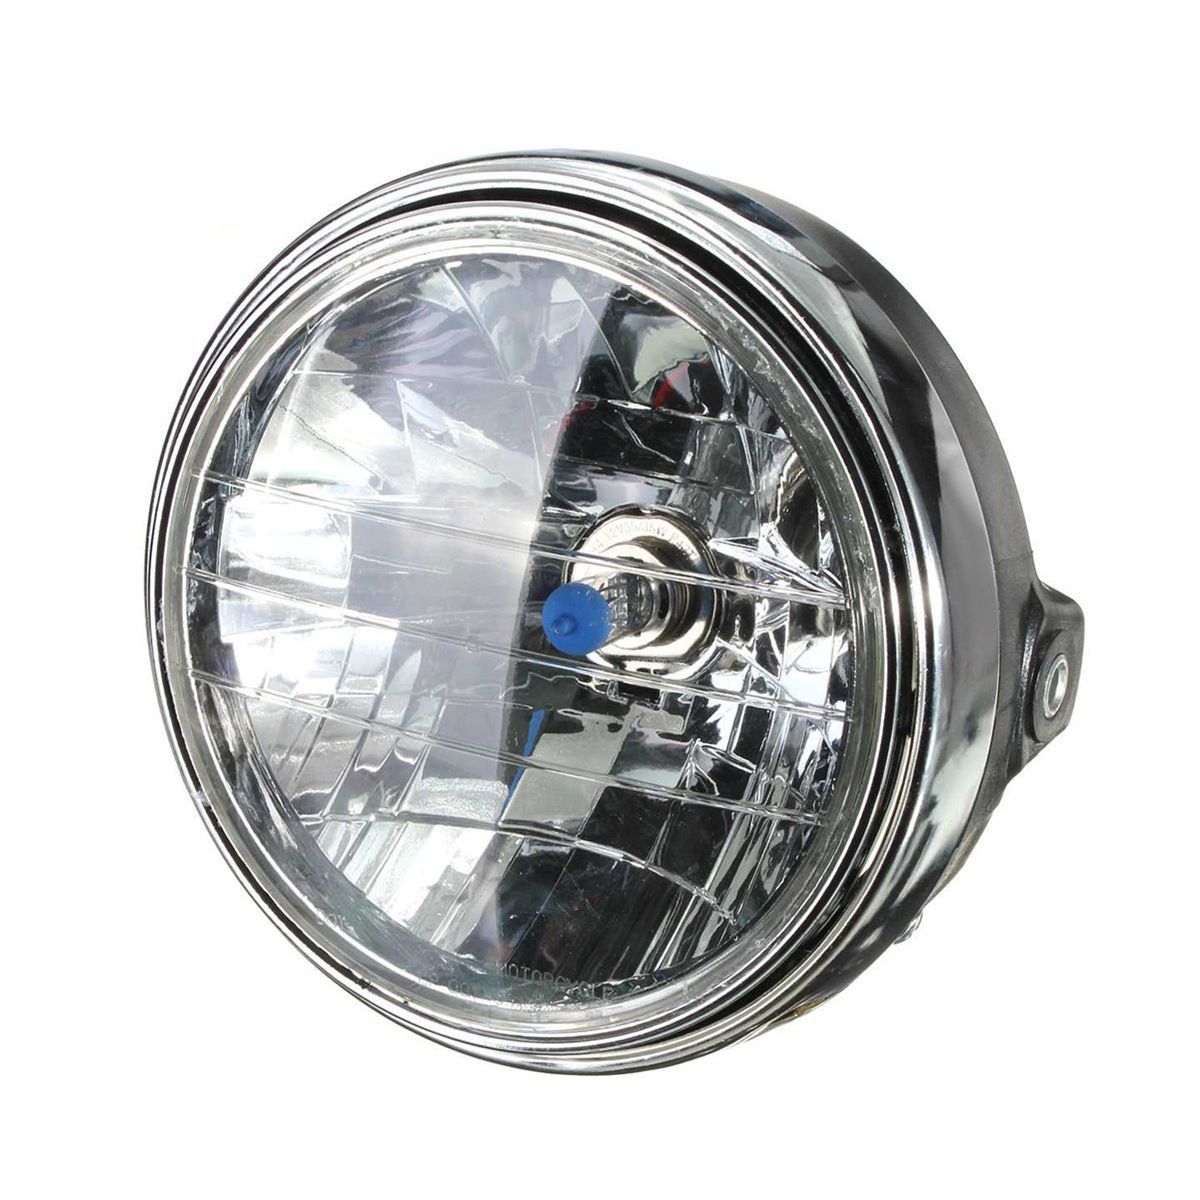 マルチリフレクターヘッドライト 180mm 180φ 180パイ (イエローレンズ) ブラックボディー 汎用品 品多く - ライト、レンズ